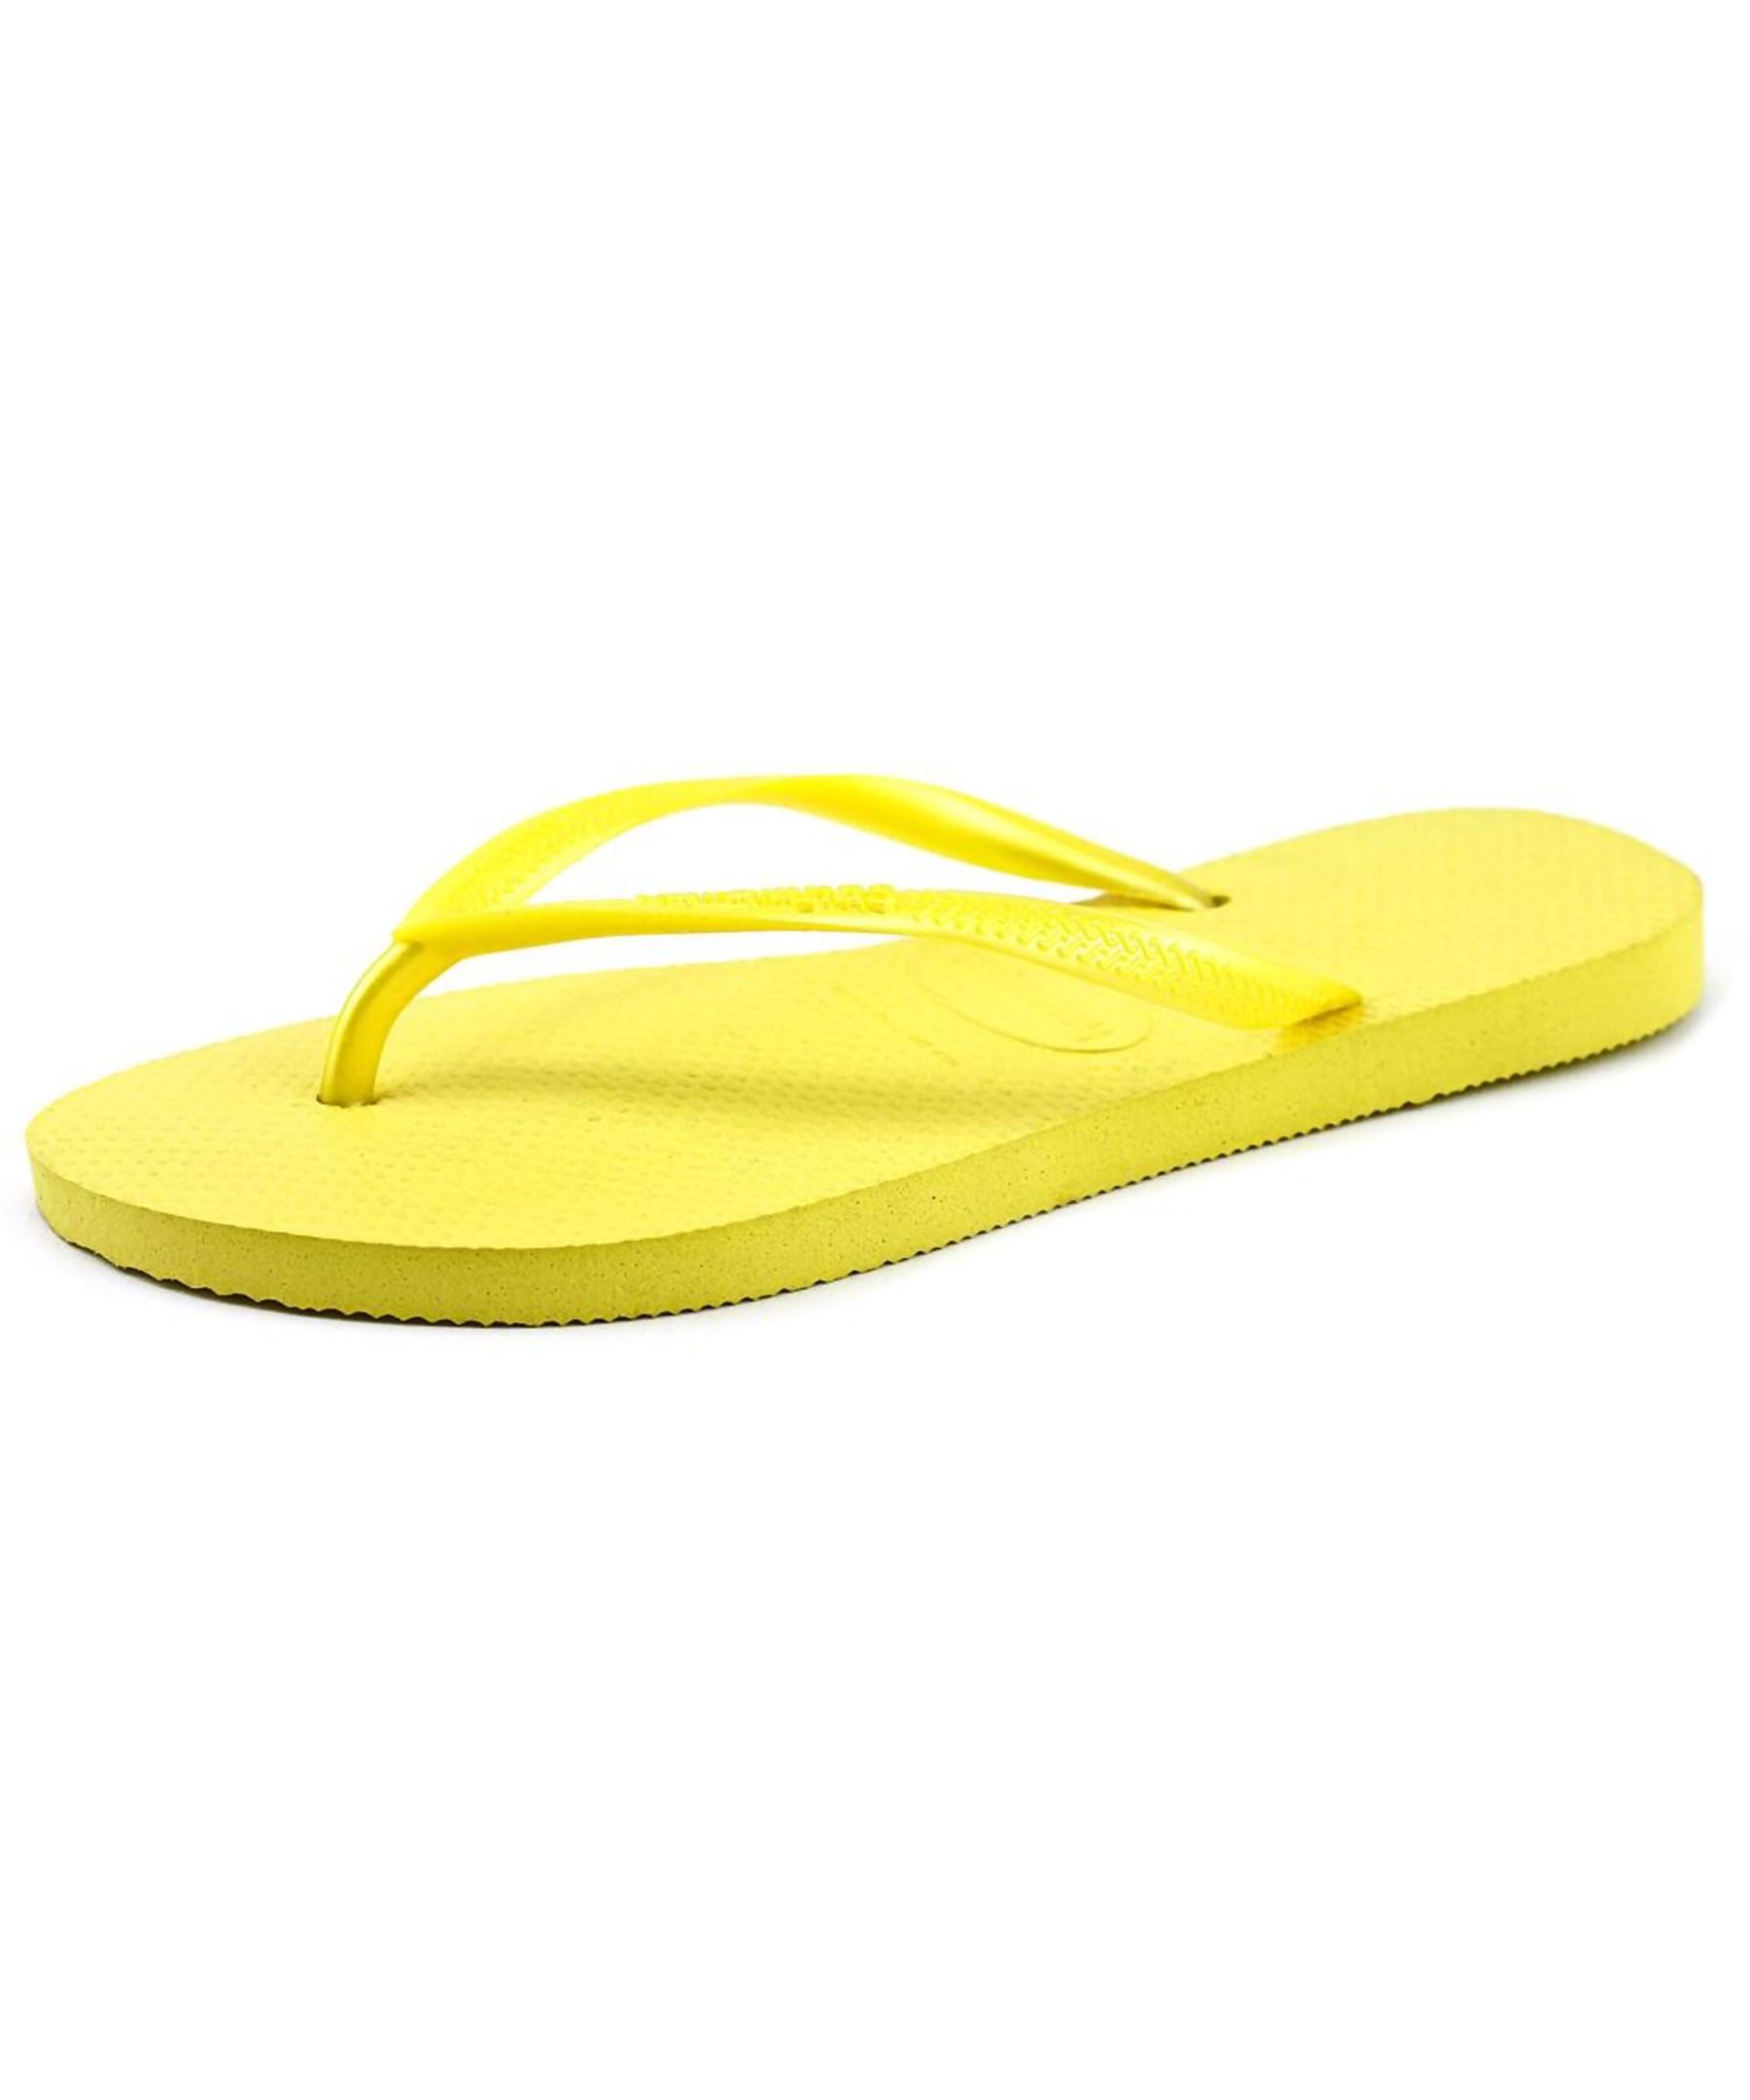 Havaianas Slim Women Open Toe Synthetic Yellow Flip Flop Sandal in ...